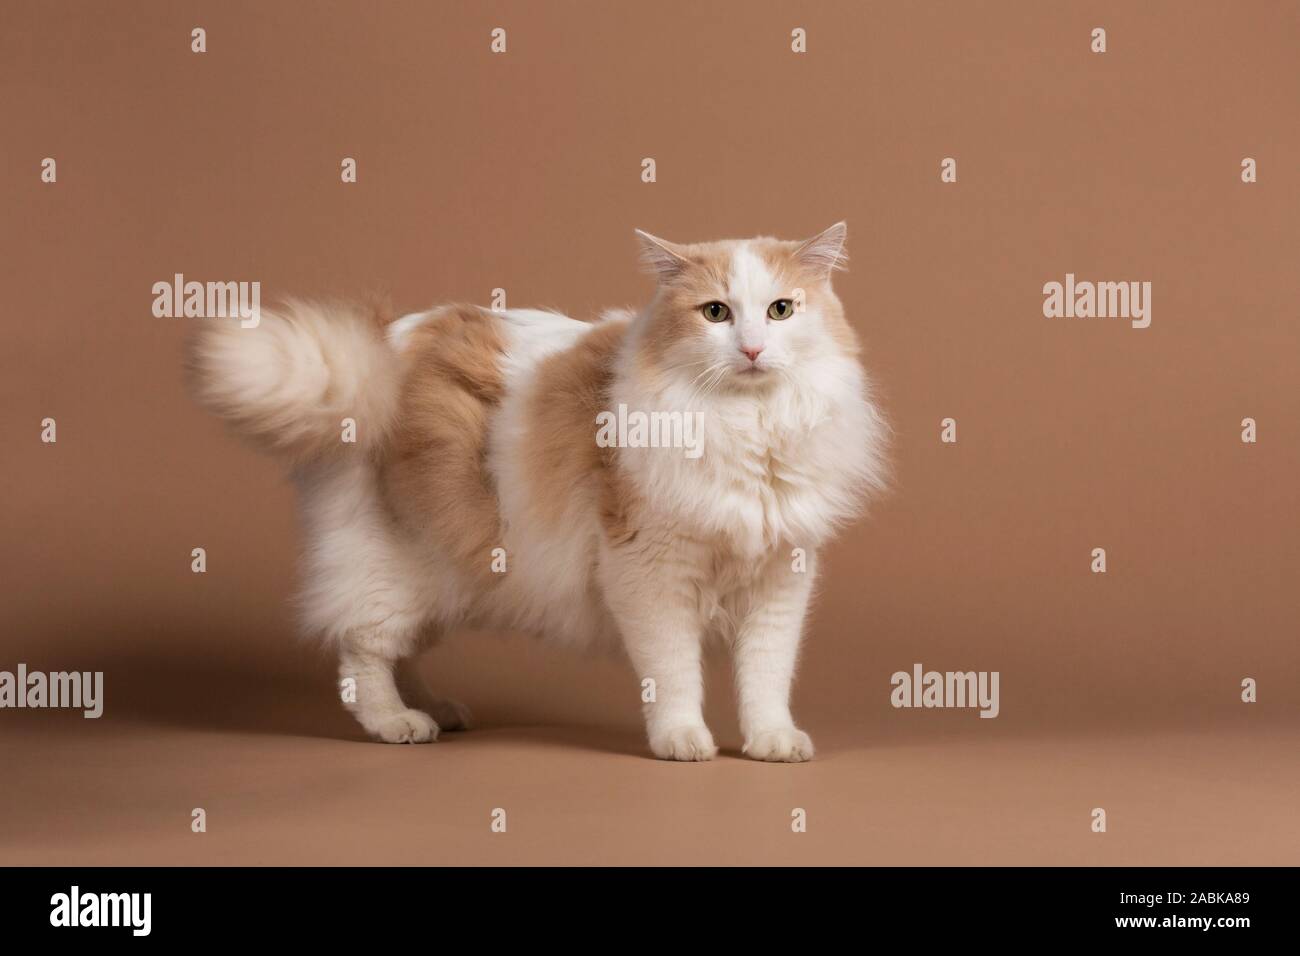 Un chat turc de van et isolés, debout devant un fond beige à brun dans l'appareil. Furry fourrure blanche, de longs cheveux brun avec détails. b Banque D'Images